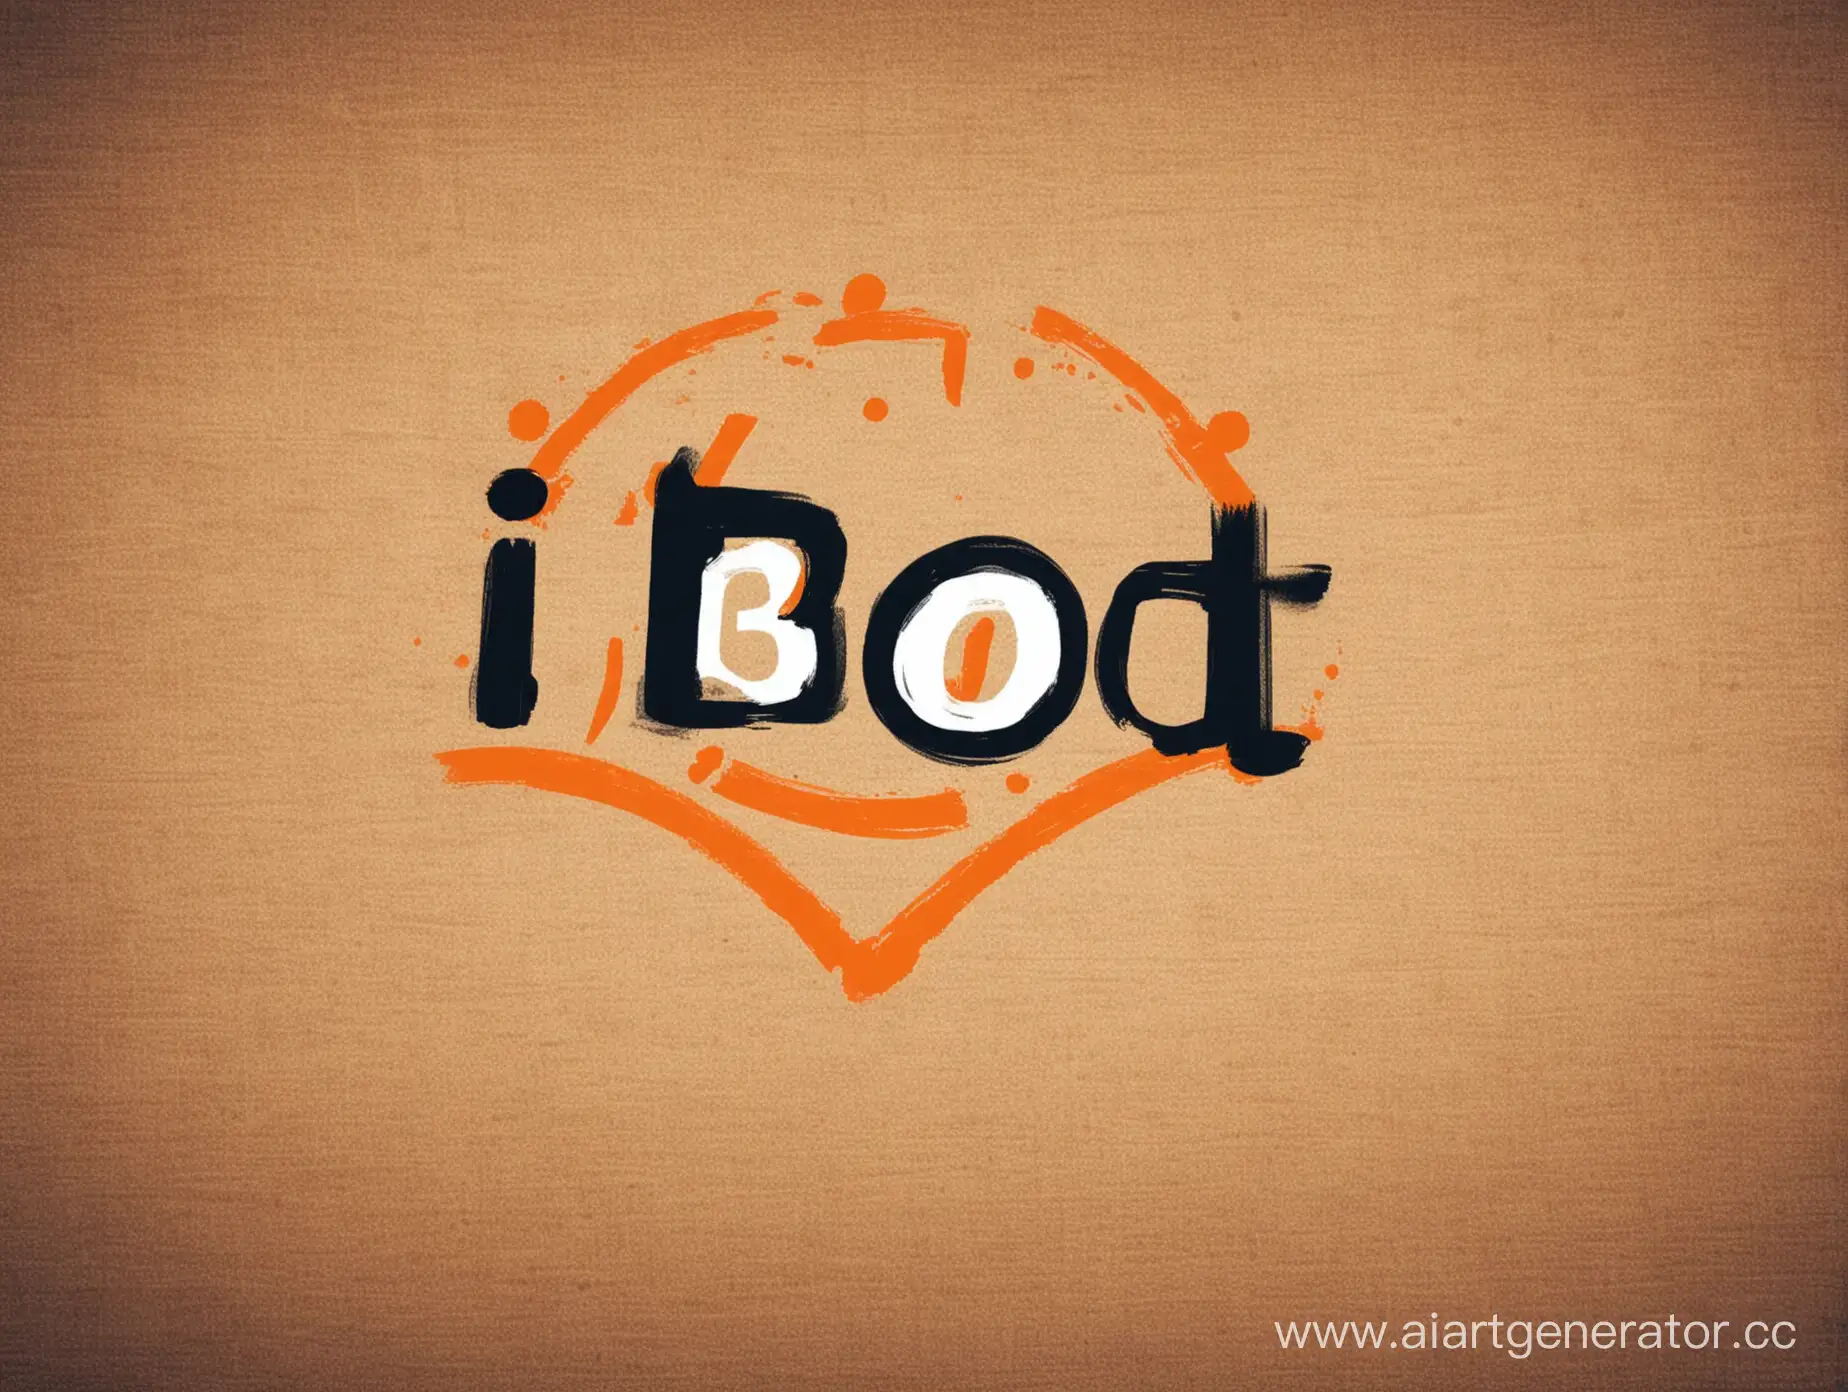 Логотип маркетплейса название IBoot